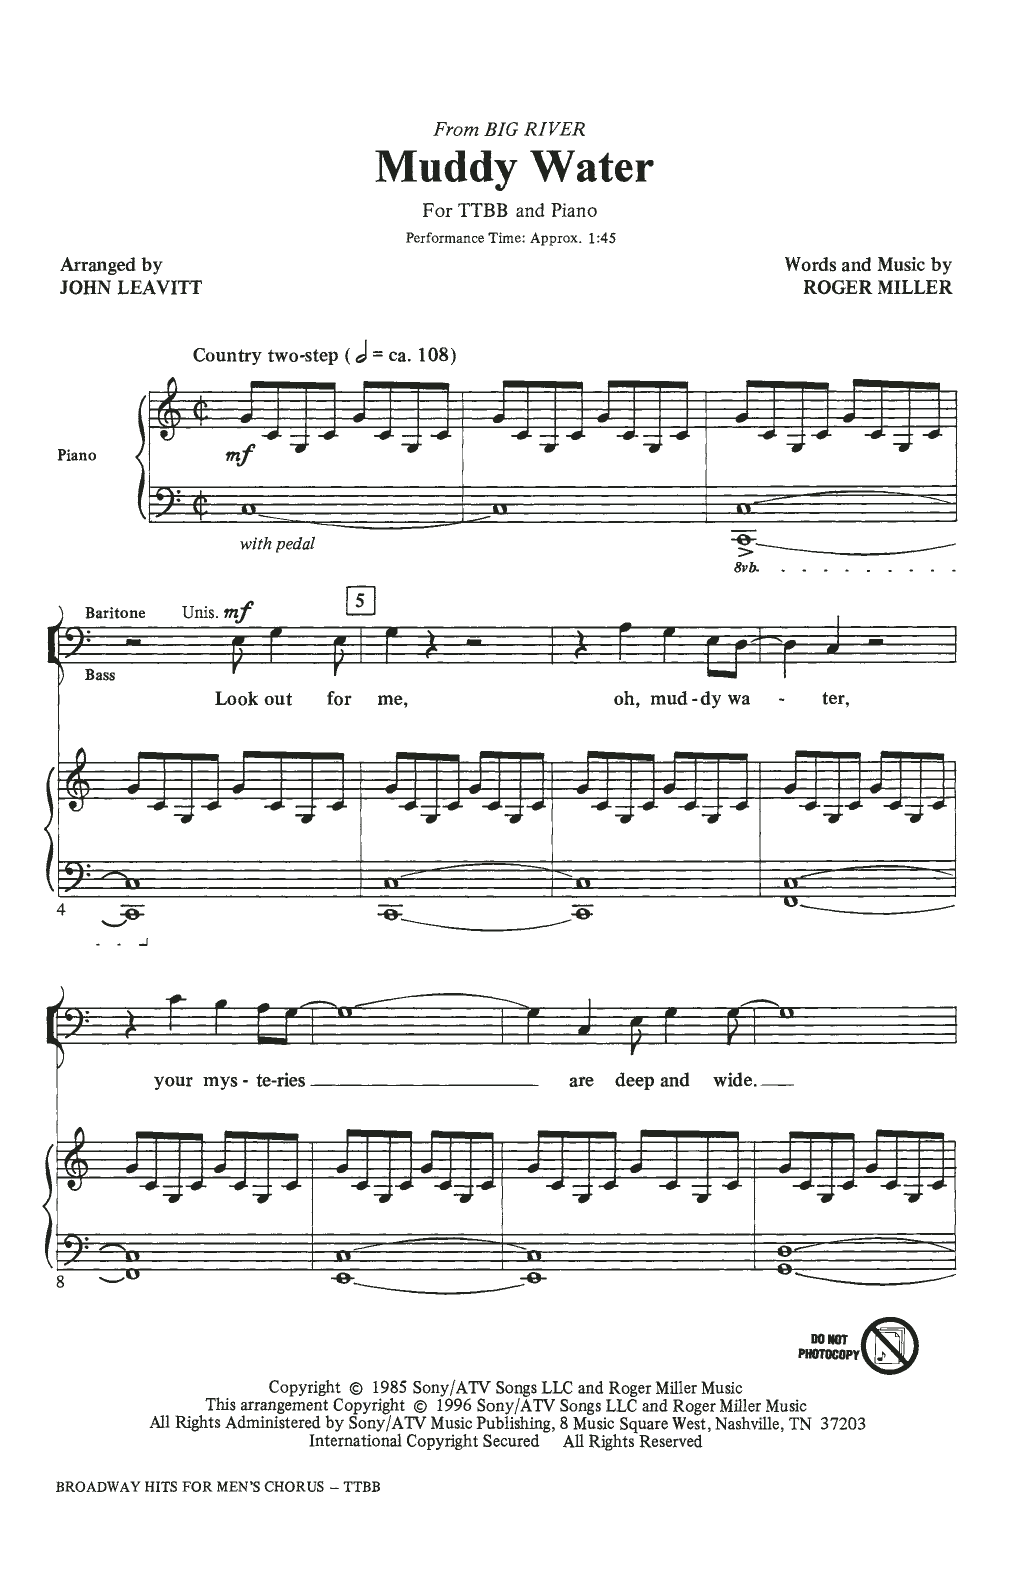 John Leavitt Broadway Hits For Men's Chorus Sheet Music Notes & Chords for TTBB - Download or Print PDF